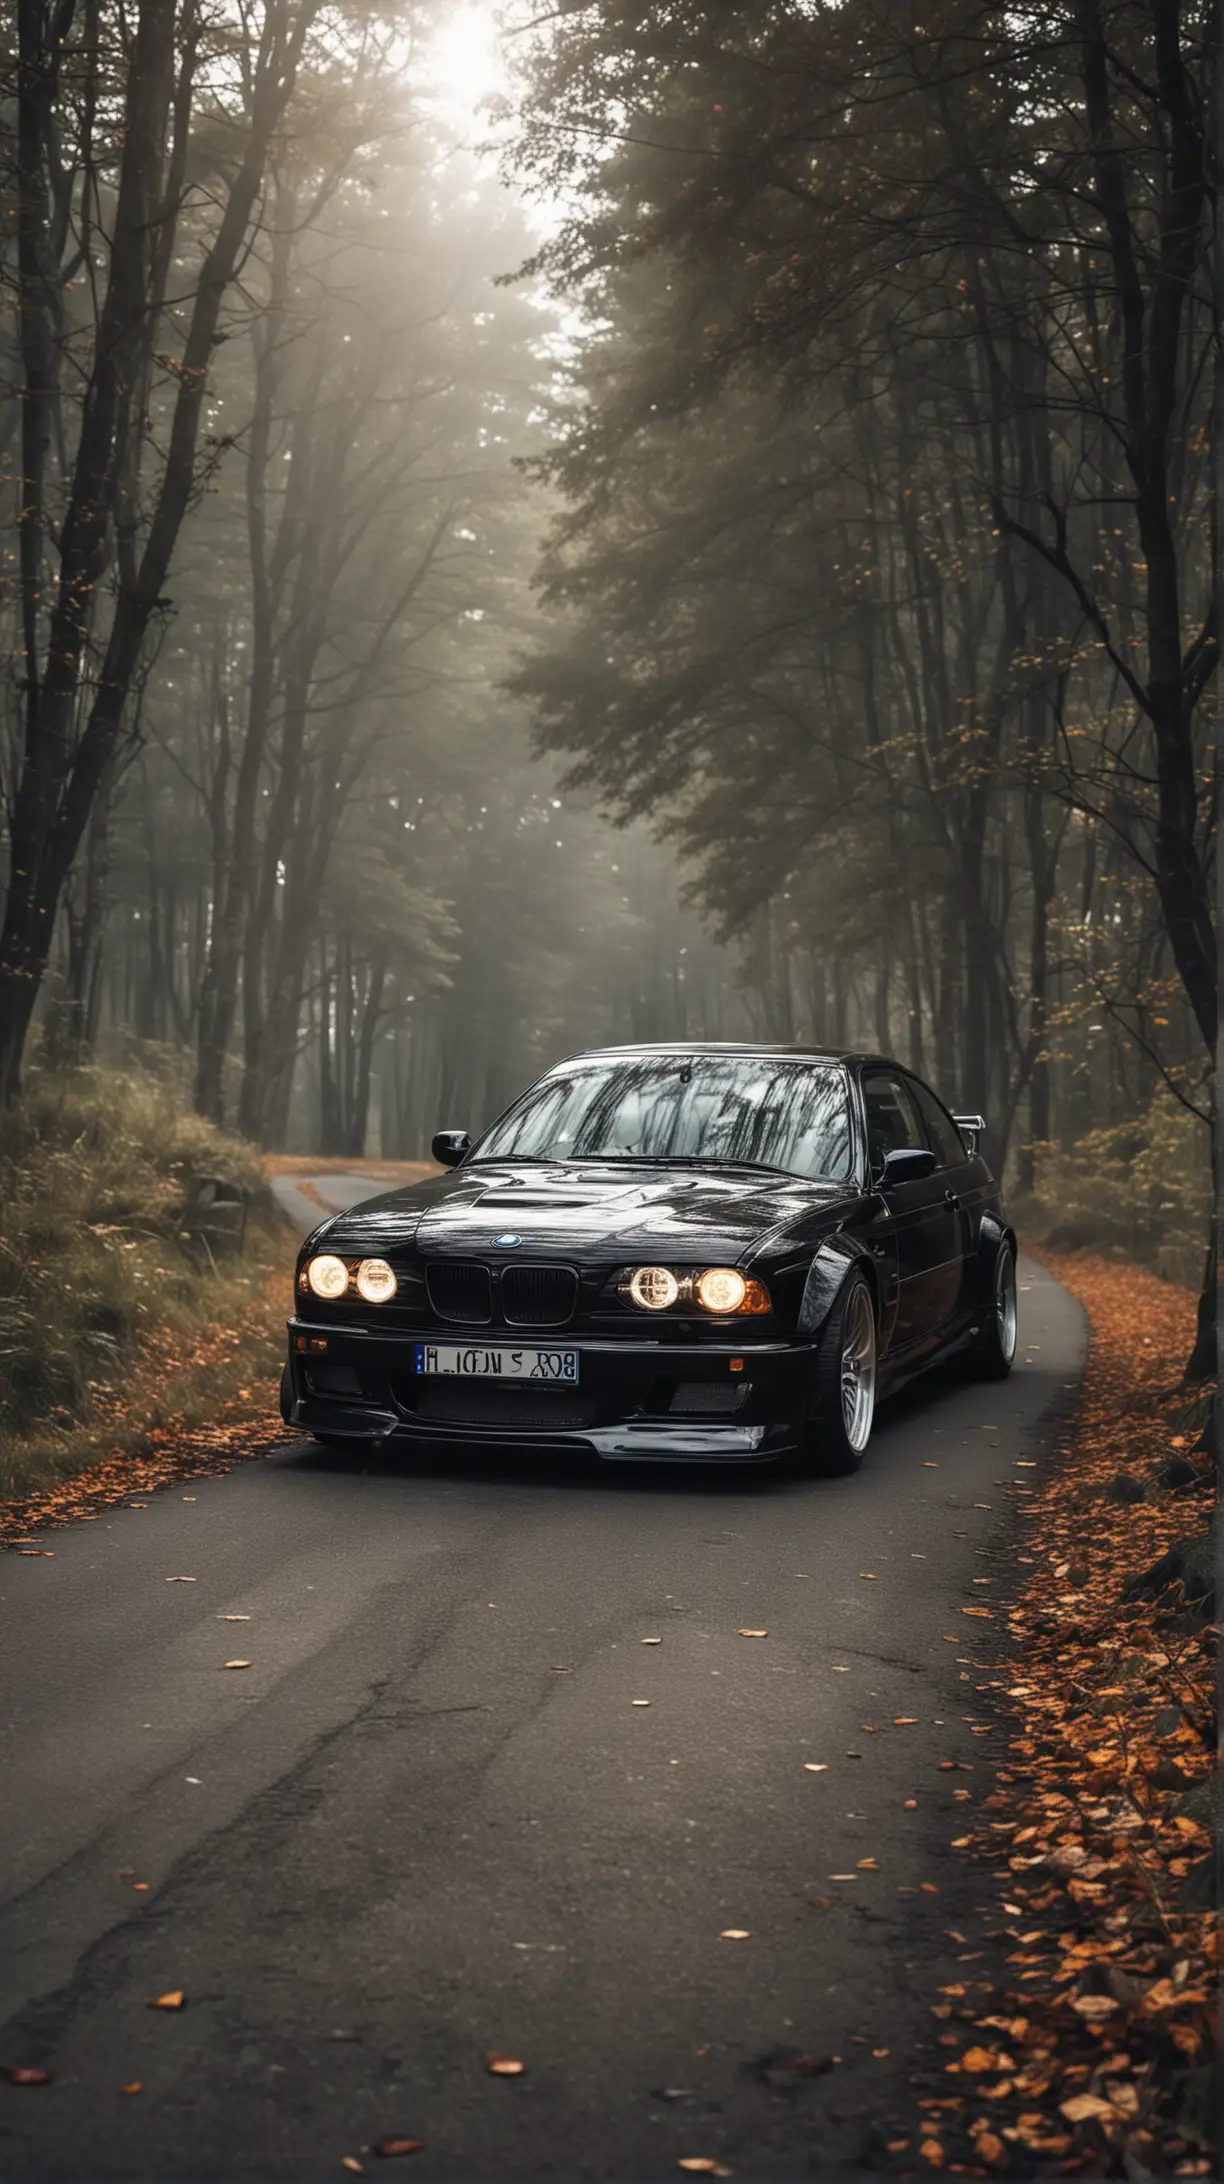  BMW M3 CSL (Coupe Sport Leichtbau) - чёрный цвет с включенными фарами, с тюнингом на заднем плане красивая природа